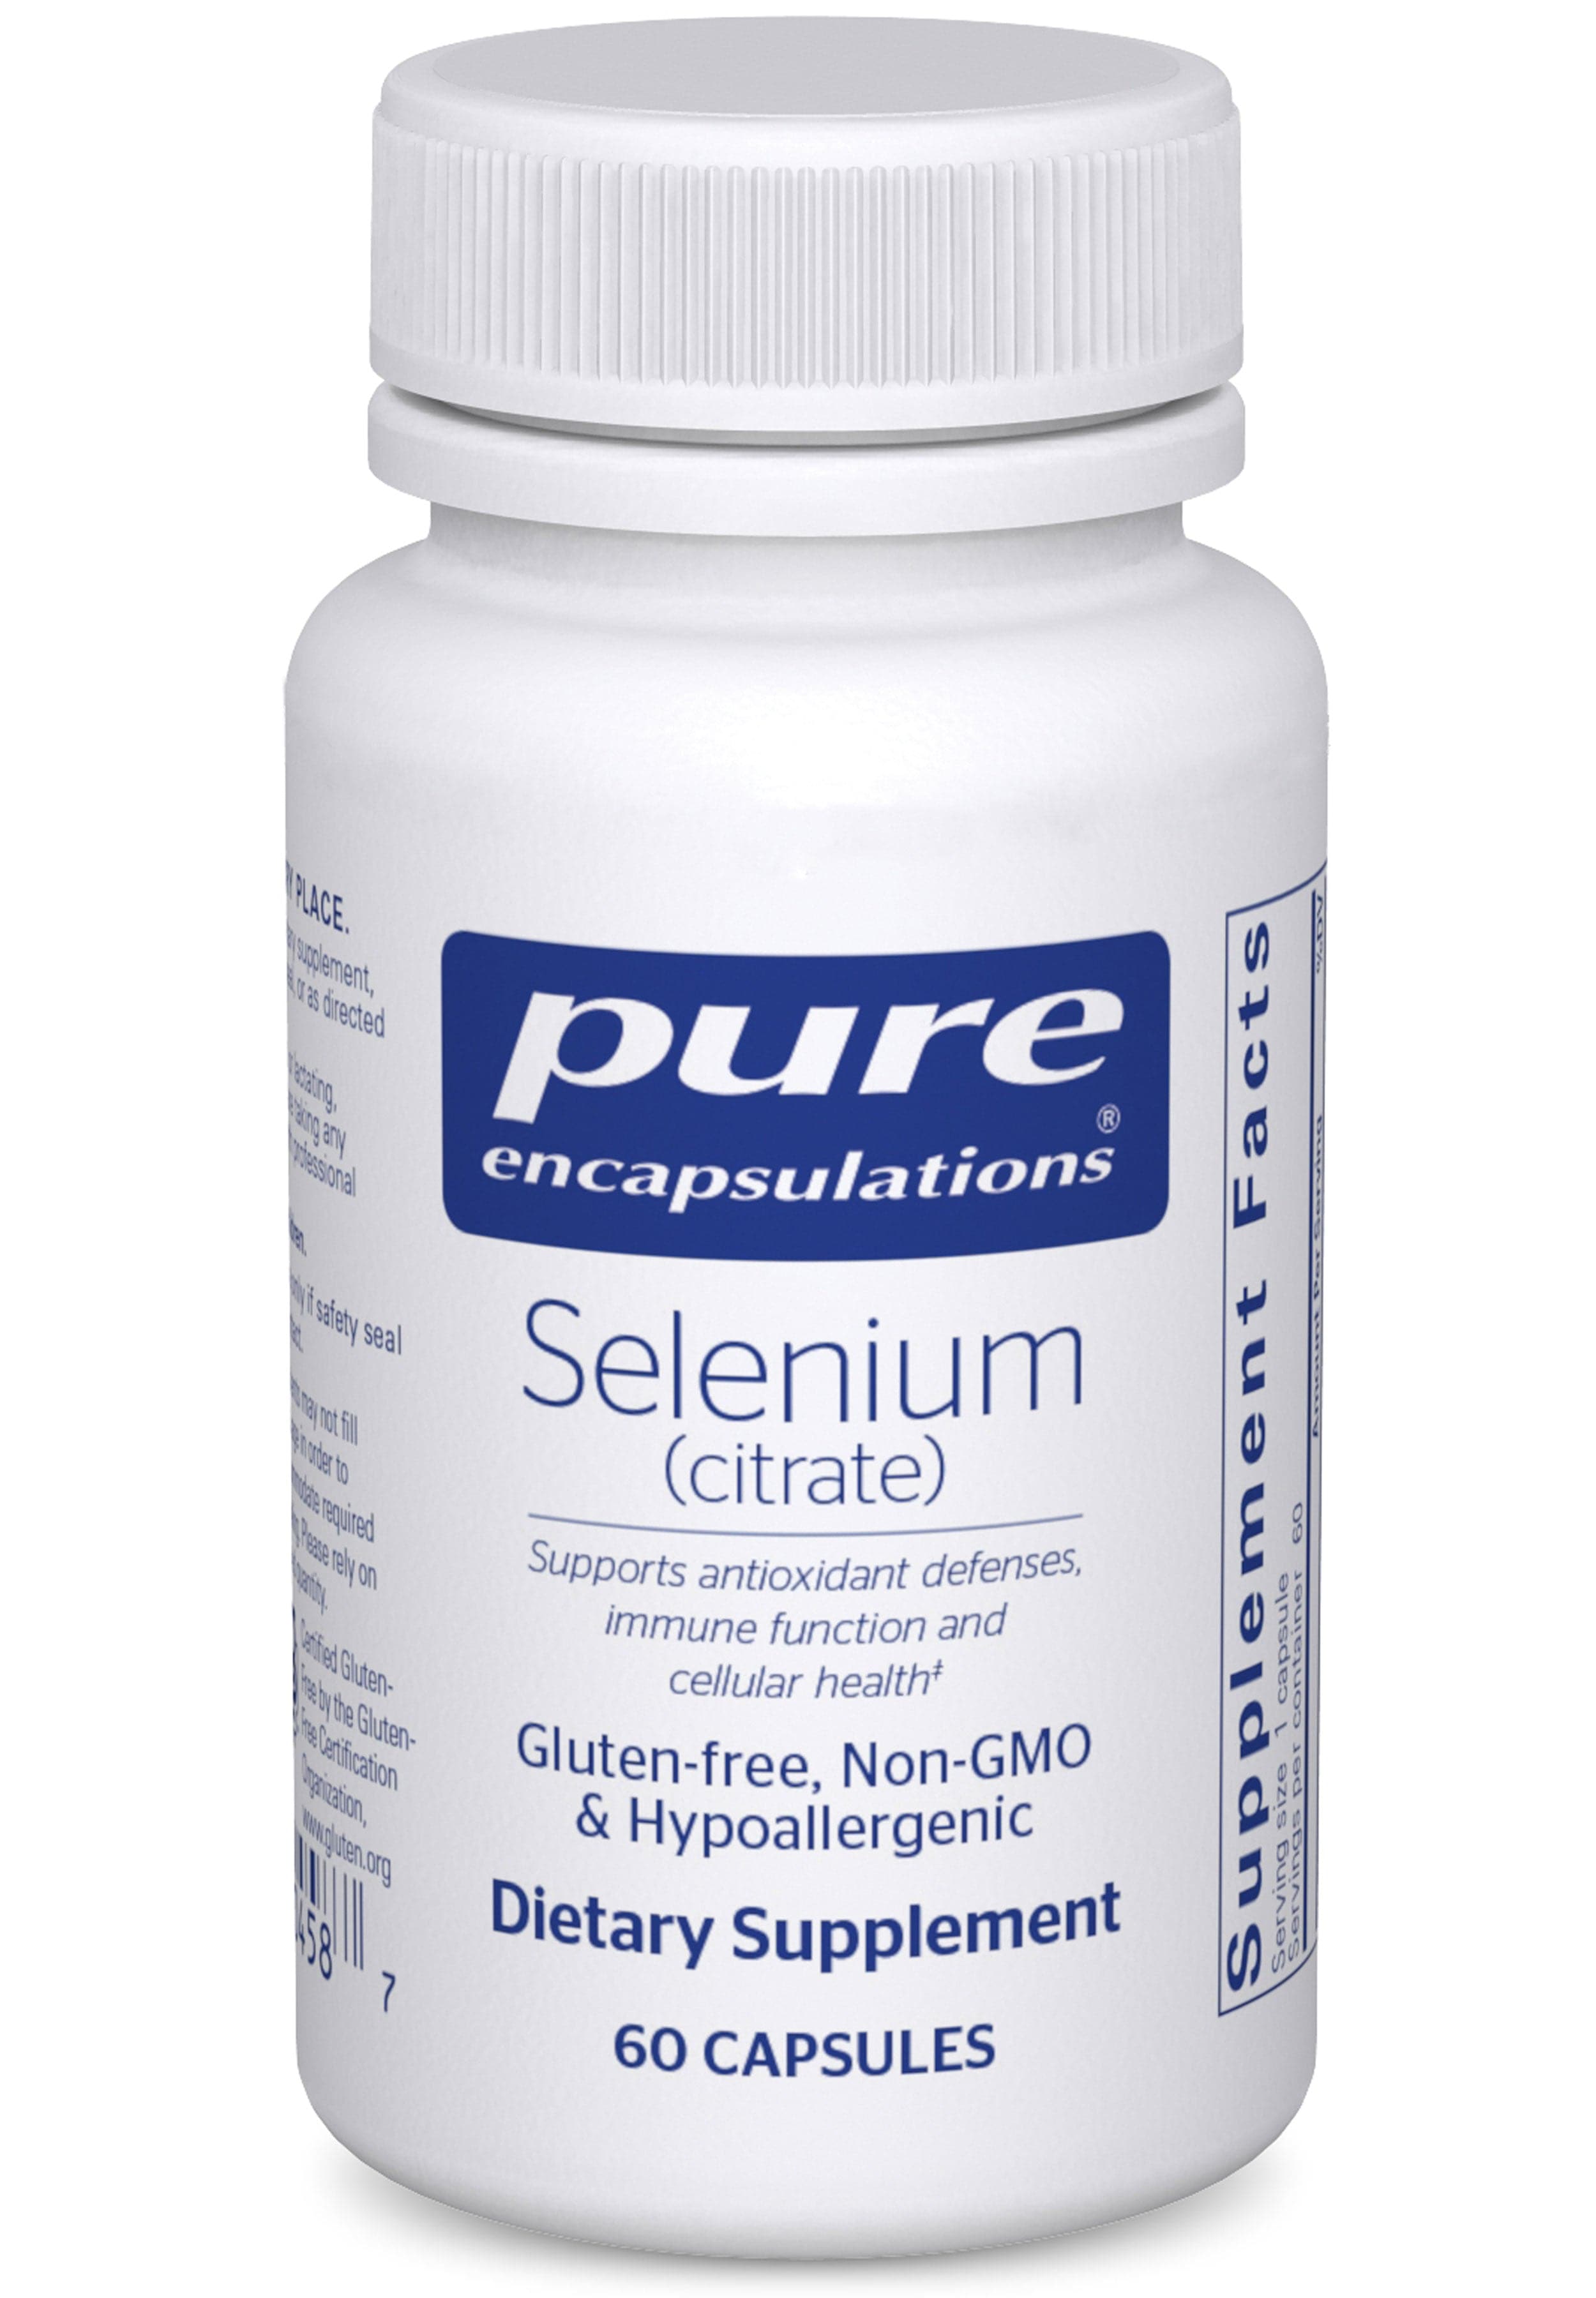 Pure Encapsulations Selenium (citrate)